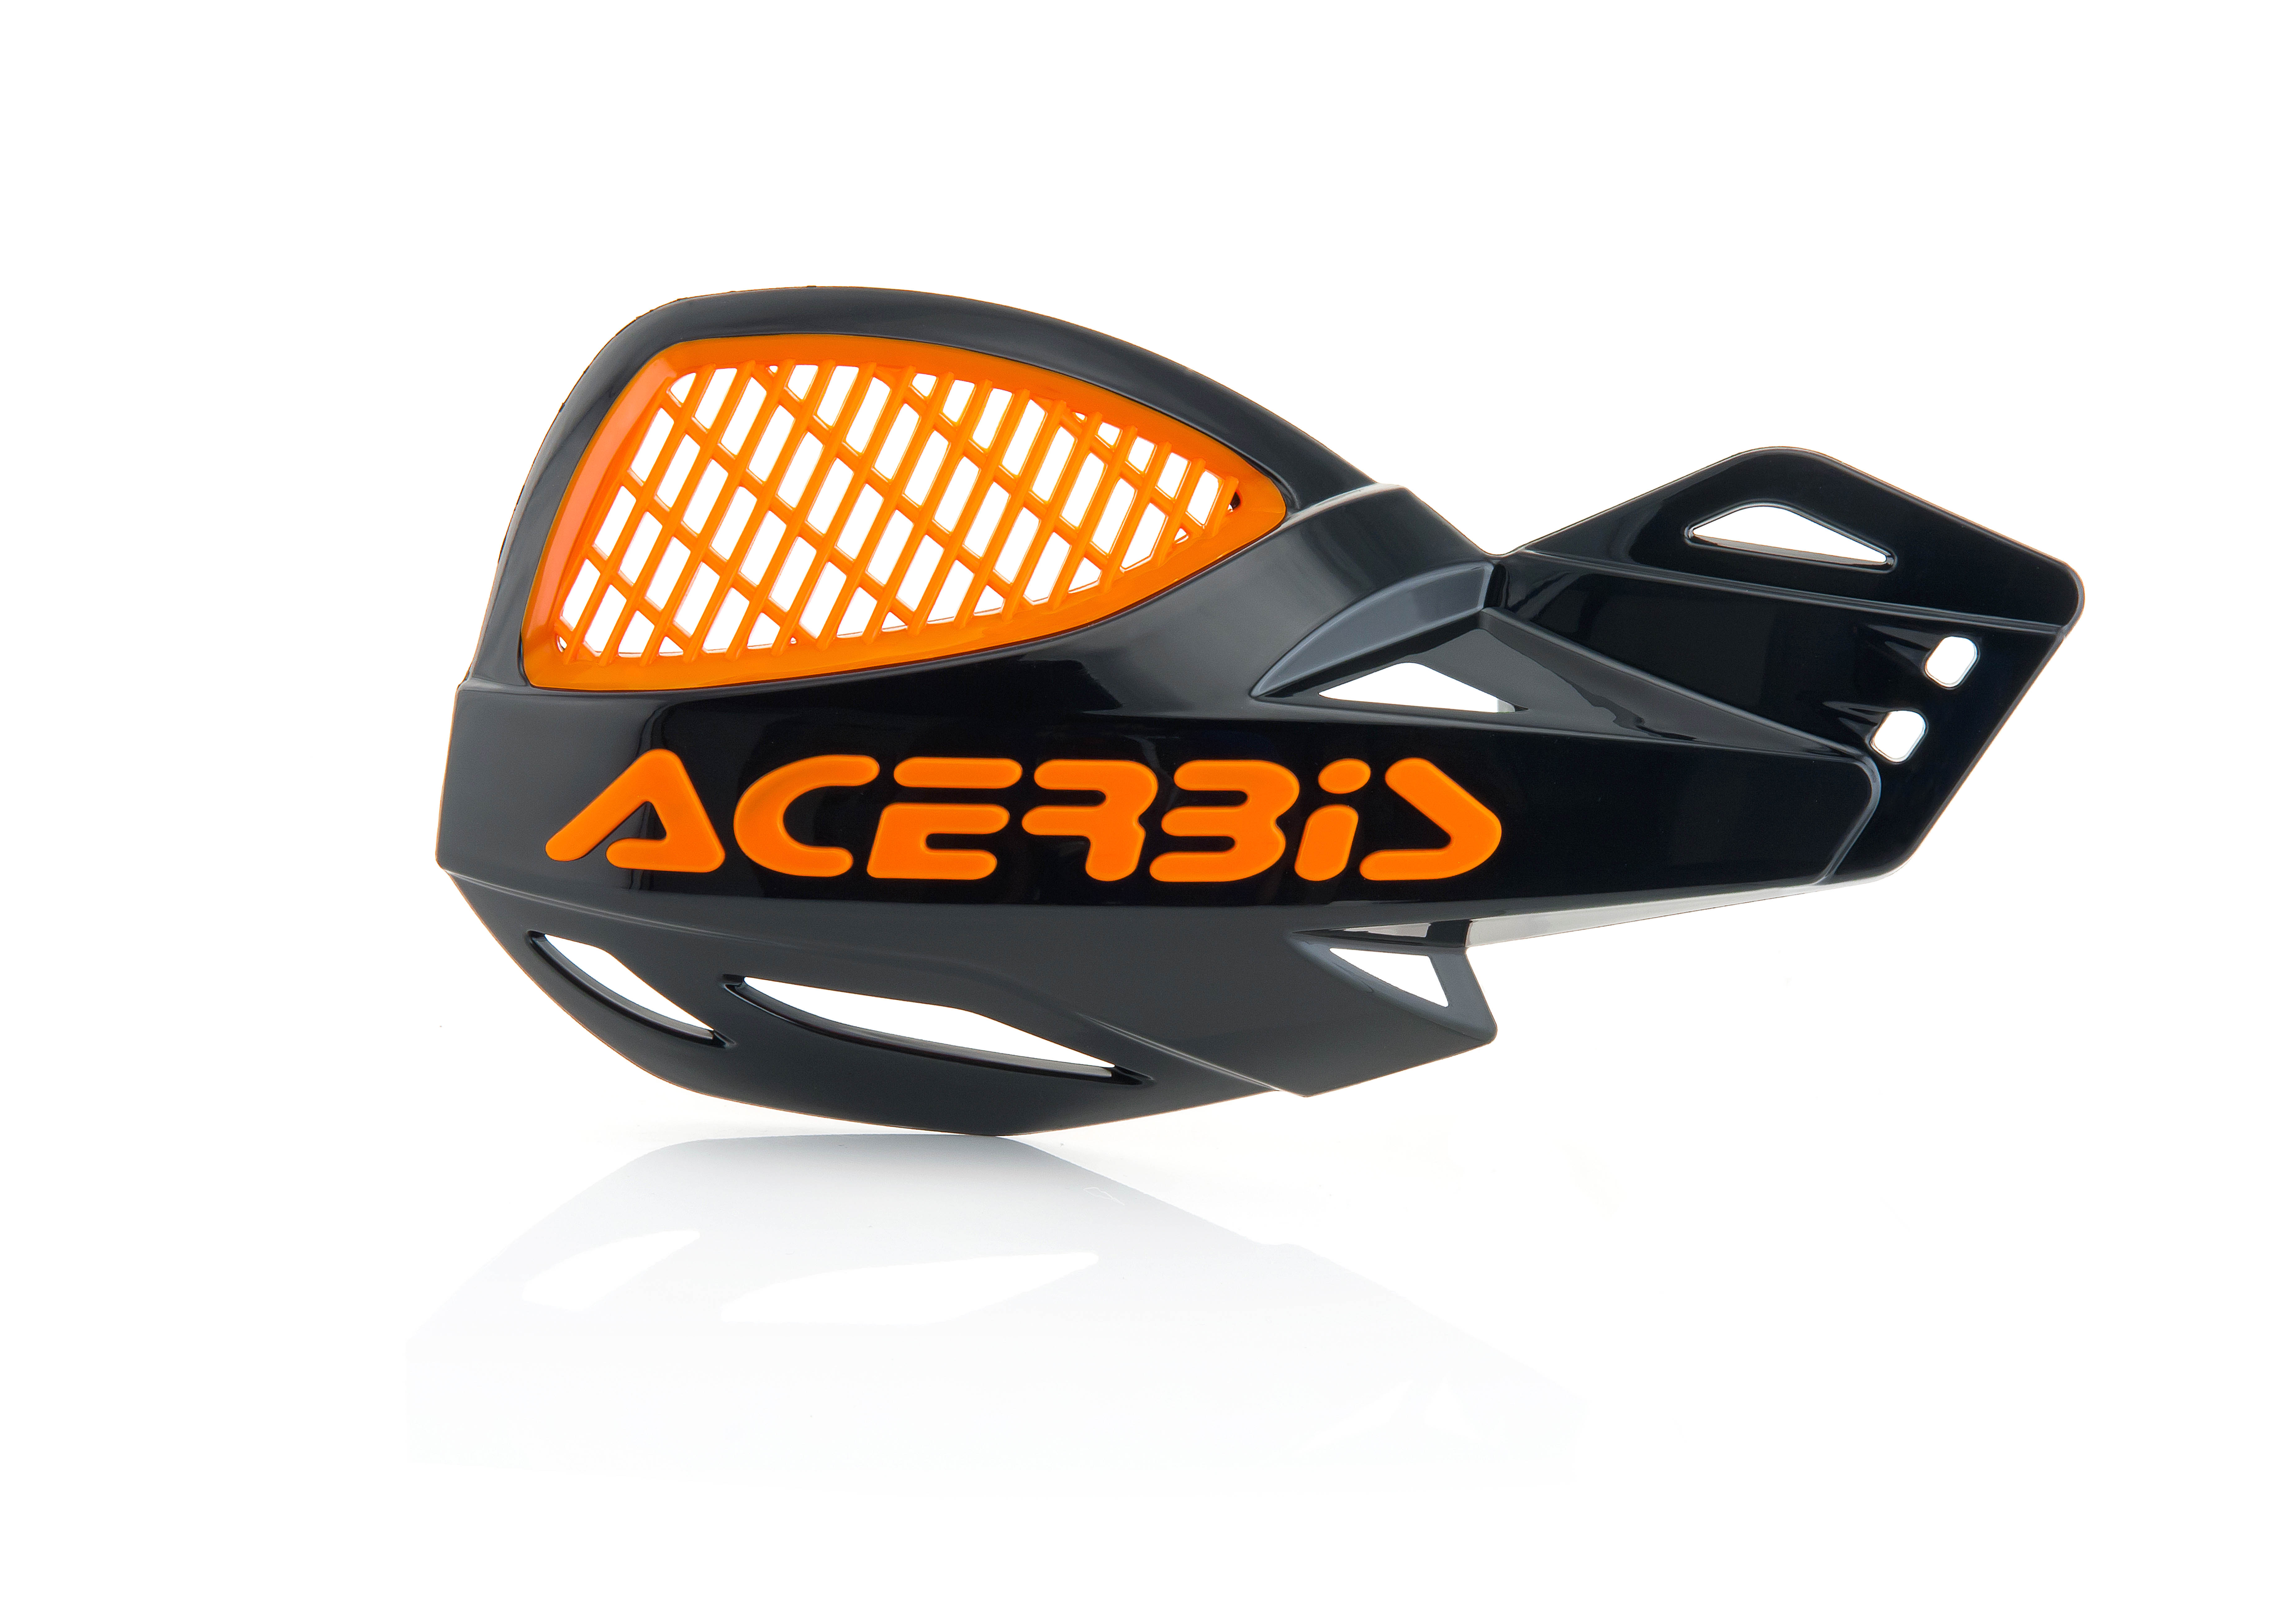 Acerbis Uniko MX Offroad Vented Handguards Orange/Black 2072670036